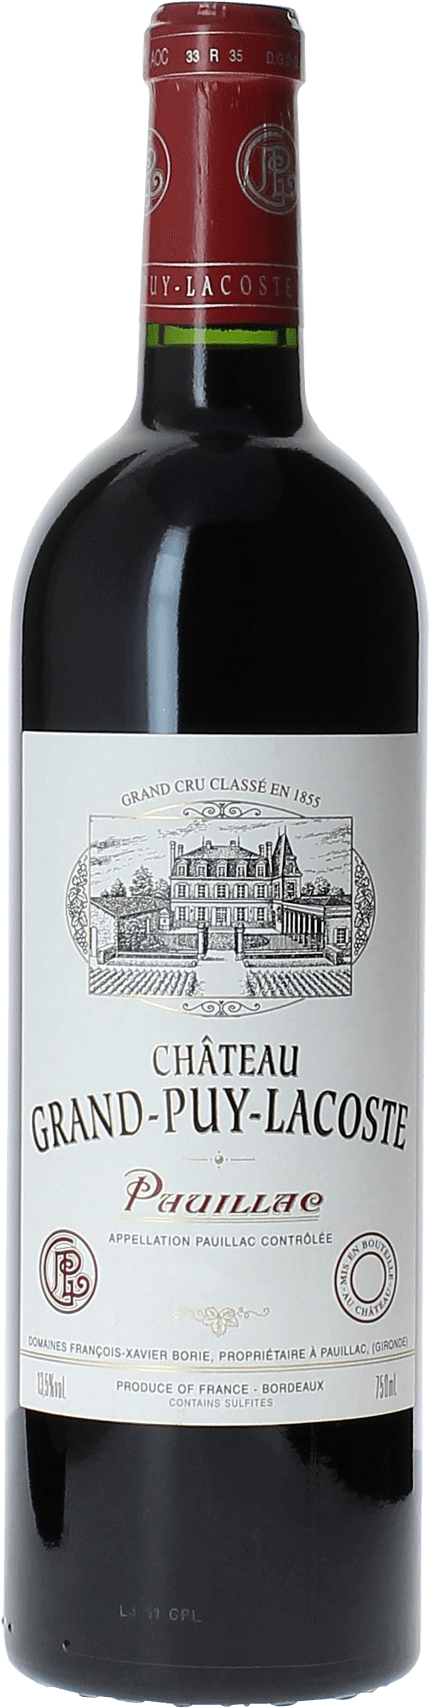 Grand puy lacoste 1995 (5 ème Grand cru classé Pauillac, vin rouge) en achat et vente, achetez vos crus et champagnes